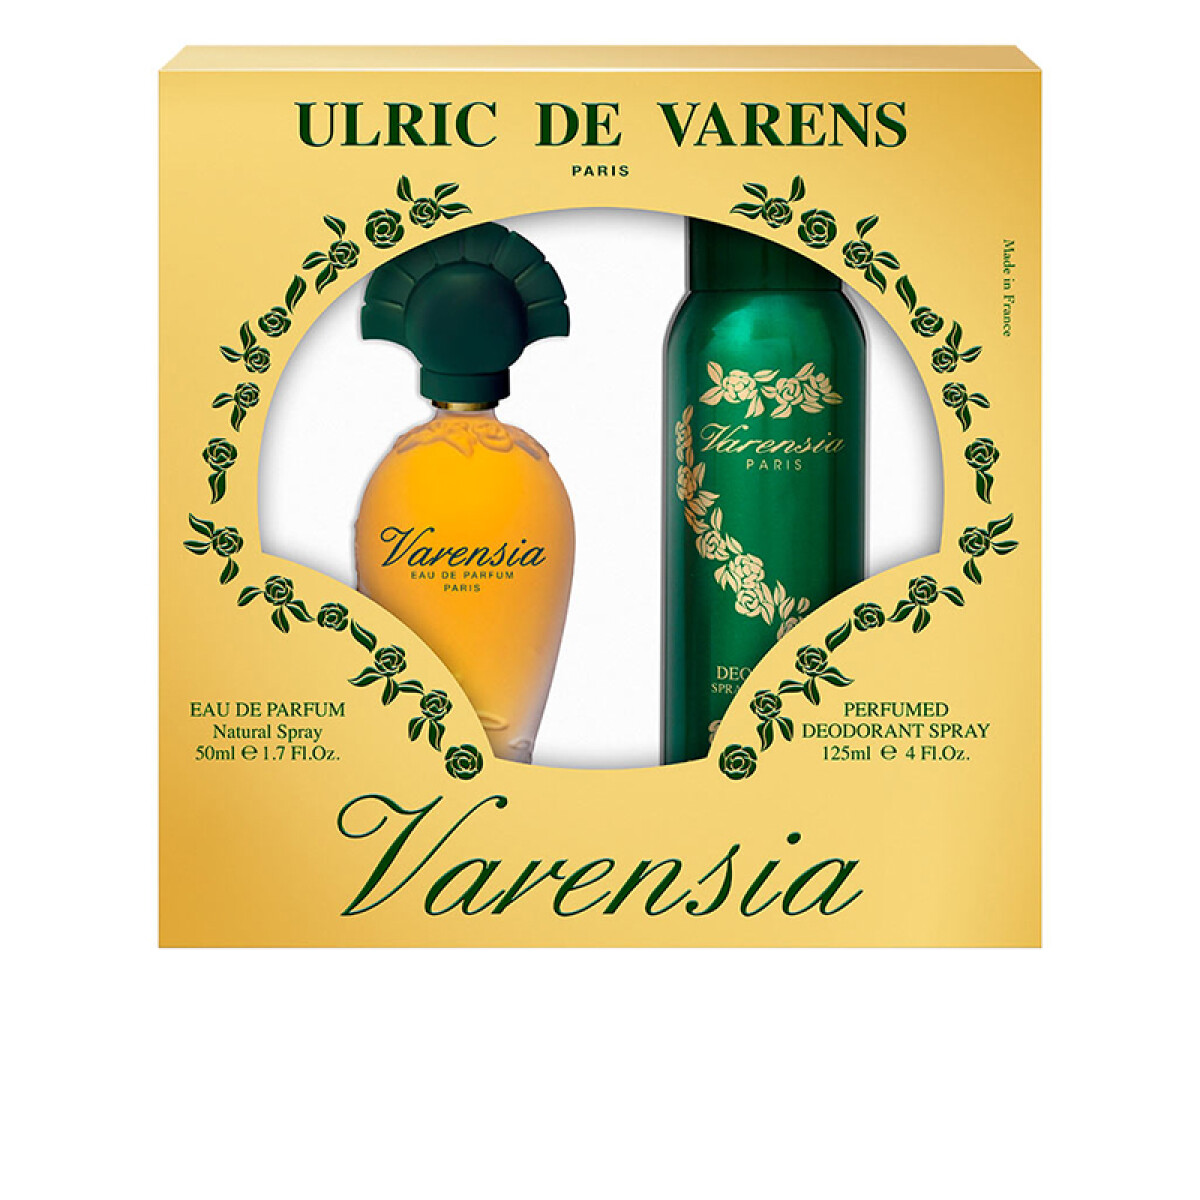 Ulric De Varens Varensia Coffret EDP 50 ml+ Deo 125 ml 